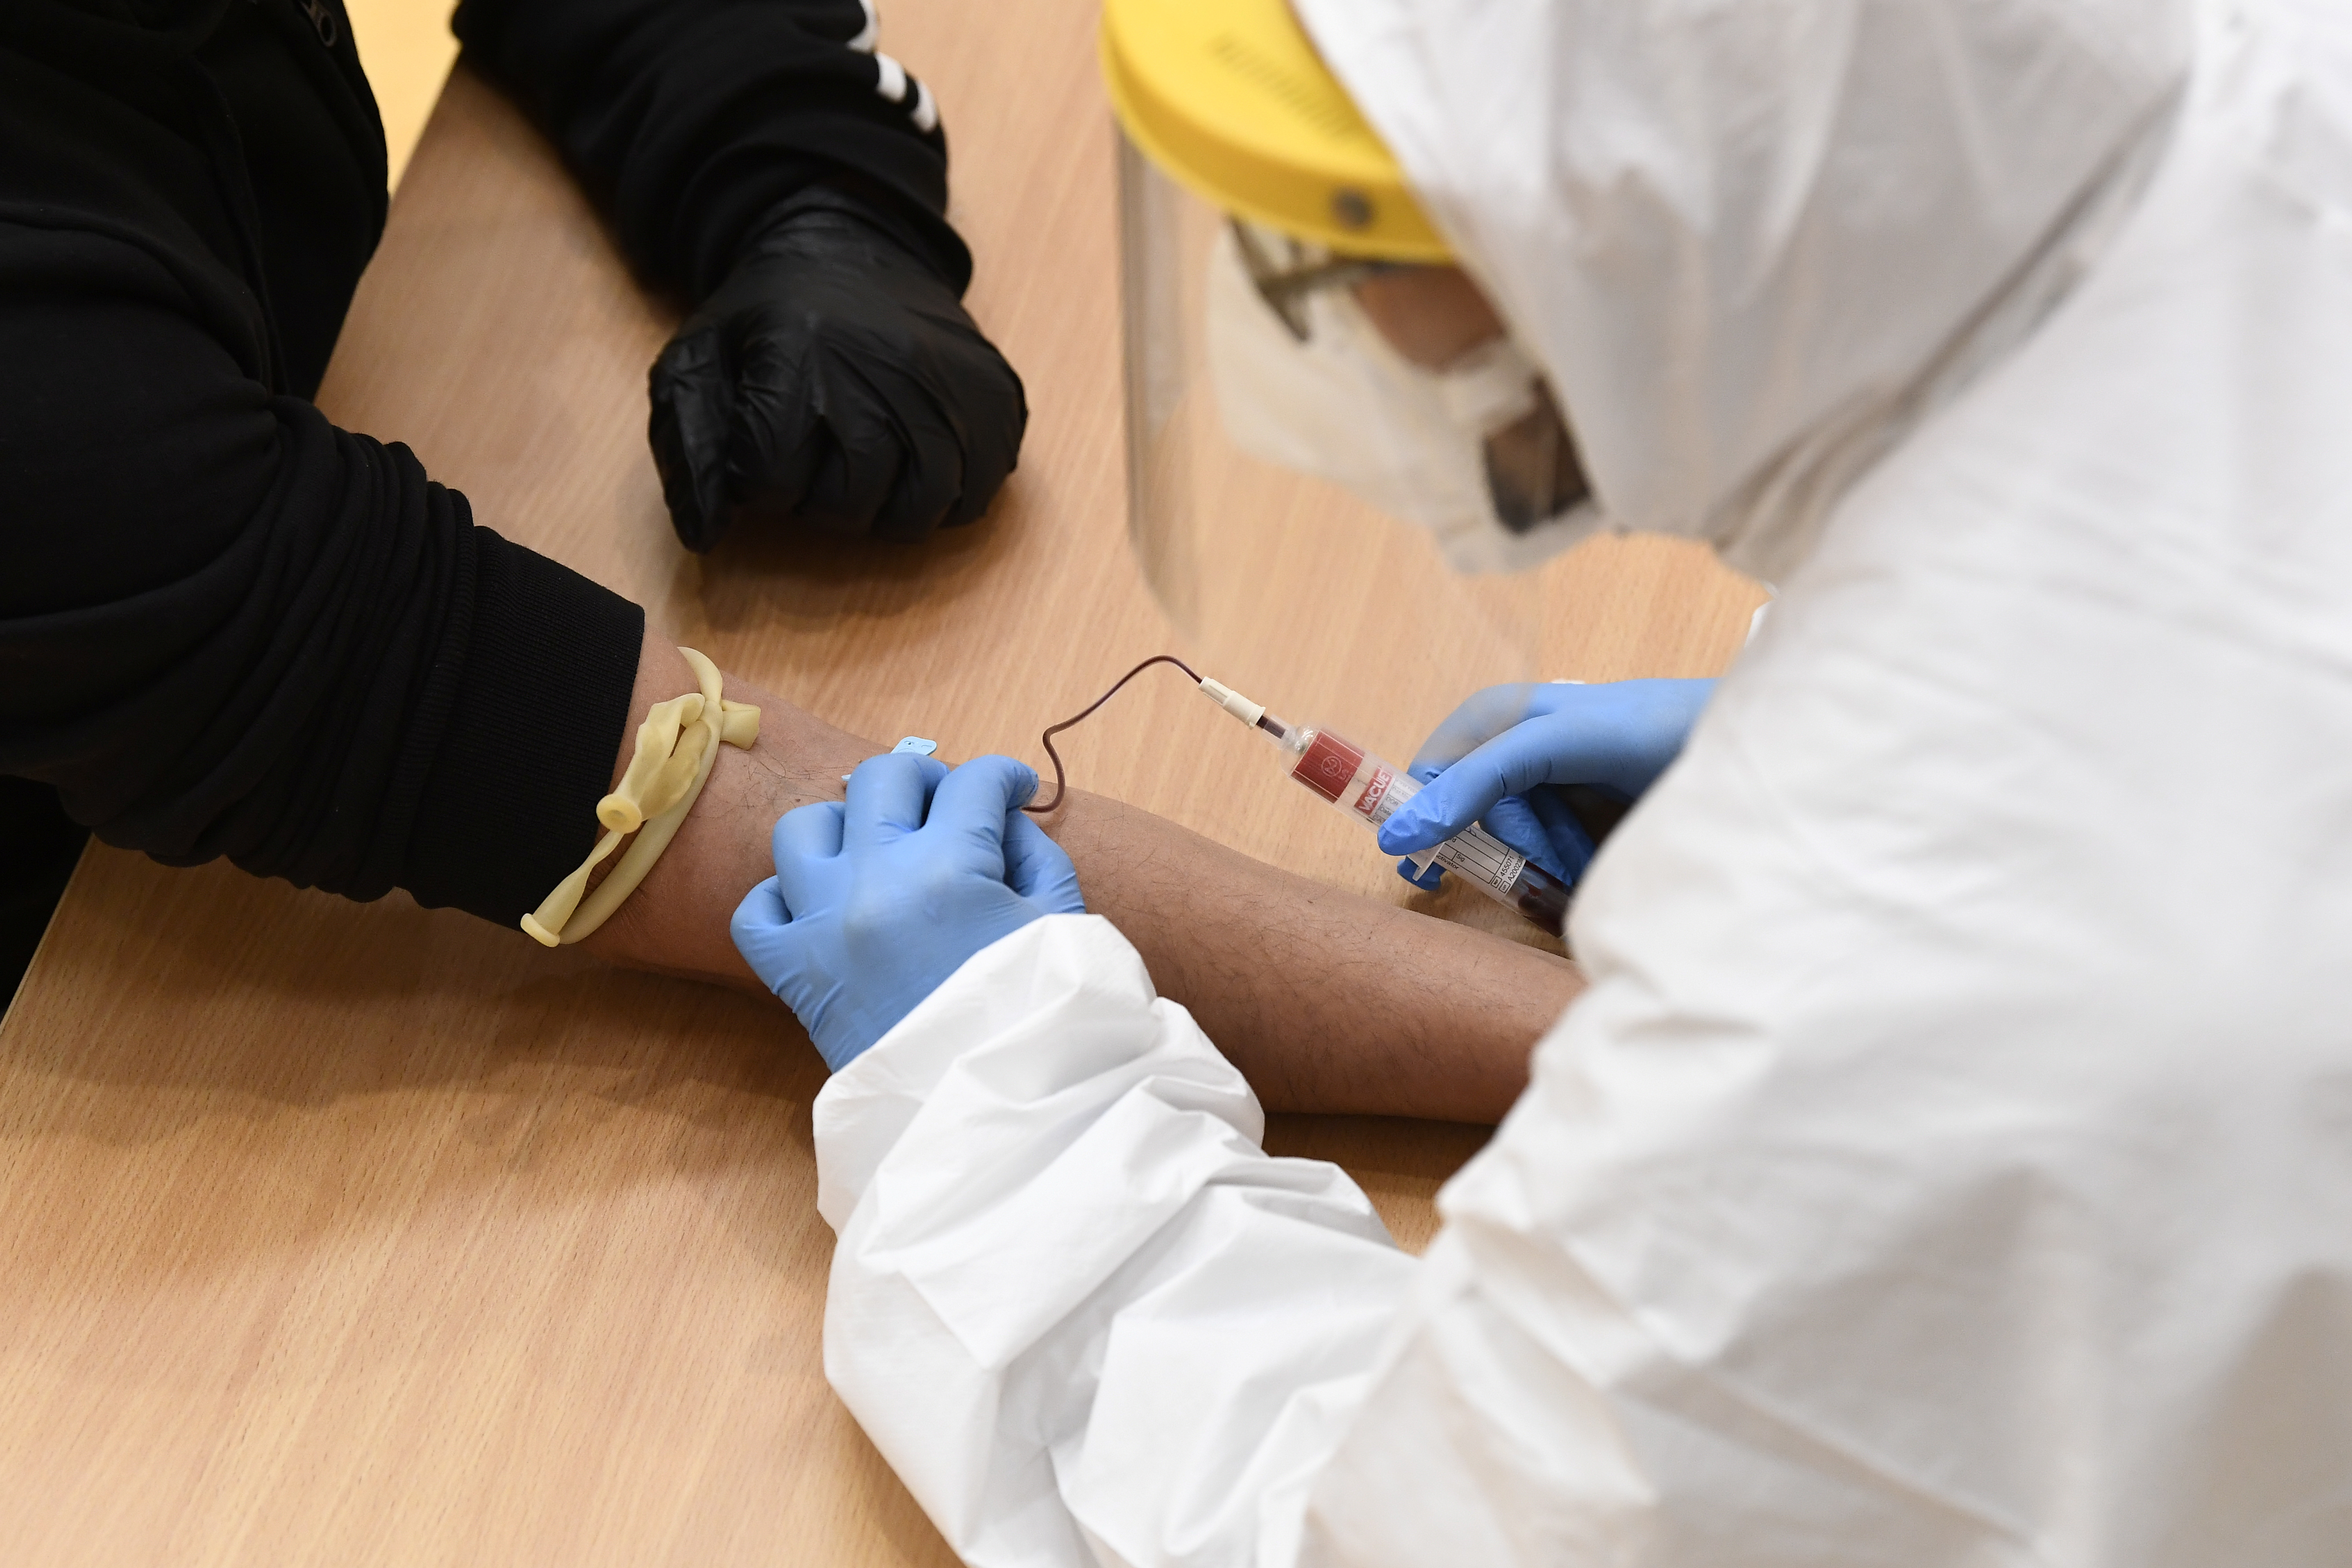 Un trabajador médico toma una muestra de sangre de un hombre para detectar la enfermedad del coronavirus (COVID-19) en Cisliano, cerca de Milán, Italia, el 21 de abril de 2020 [Fotografía tomada el 21 de abril de 2020] (Reuters/ Flavio Lo Scalzo)